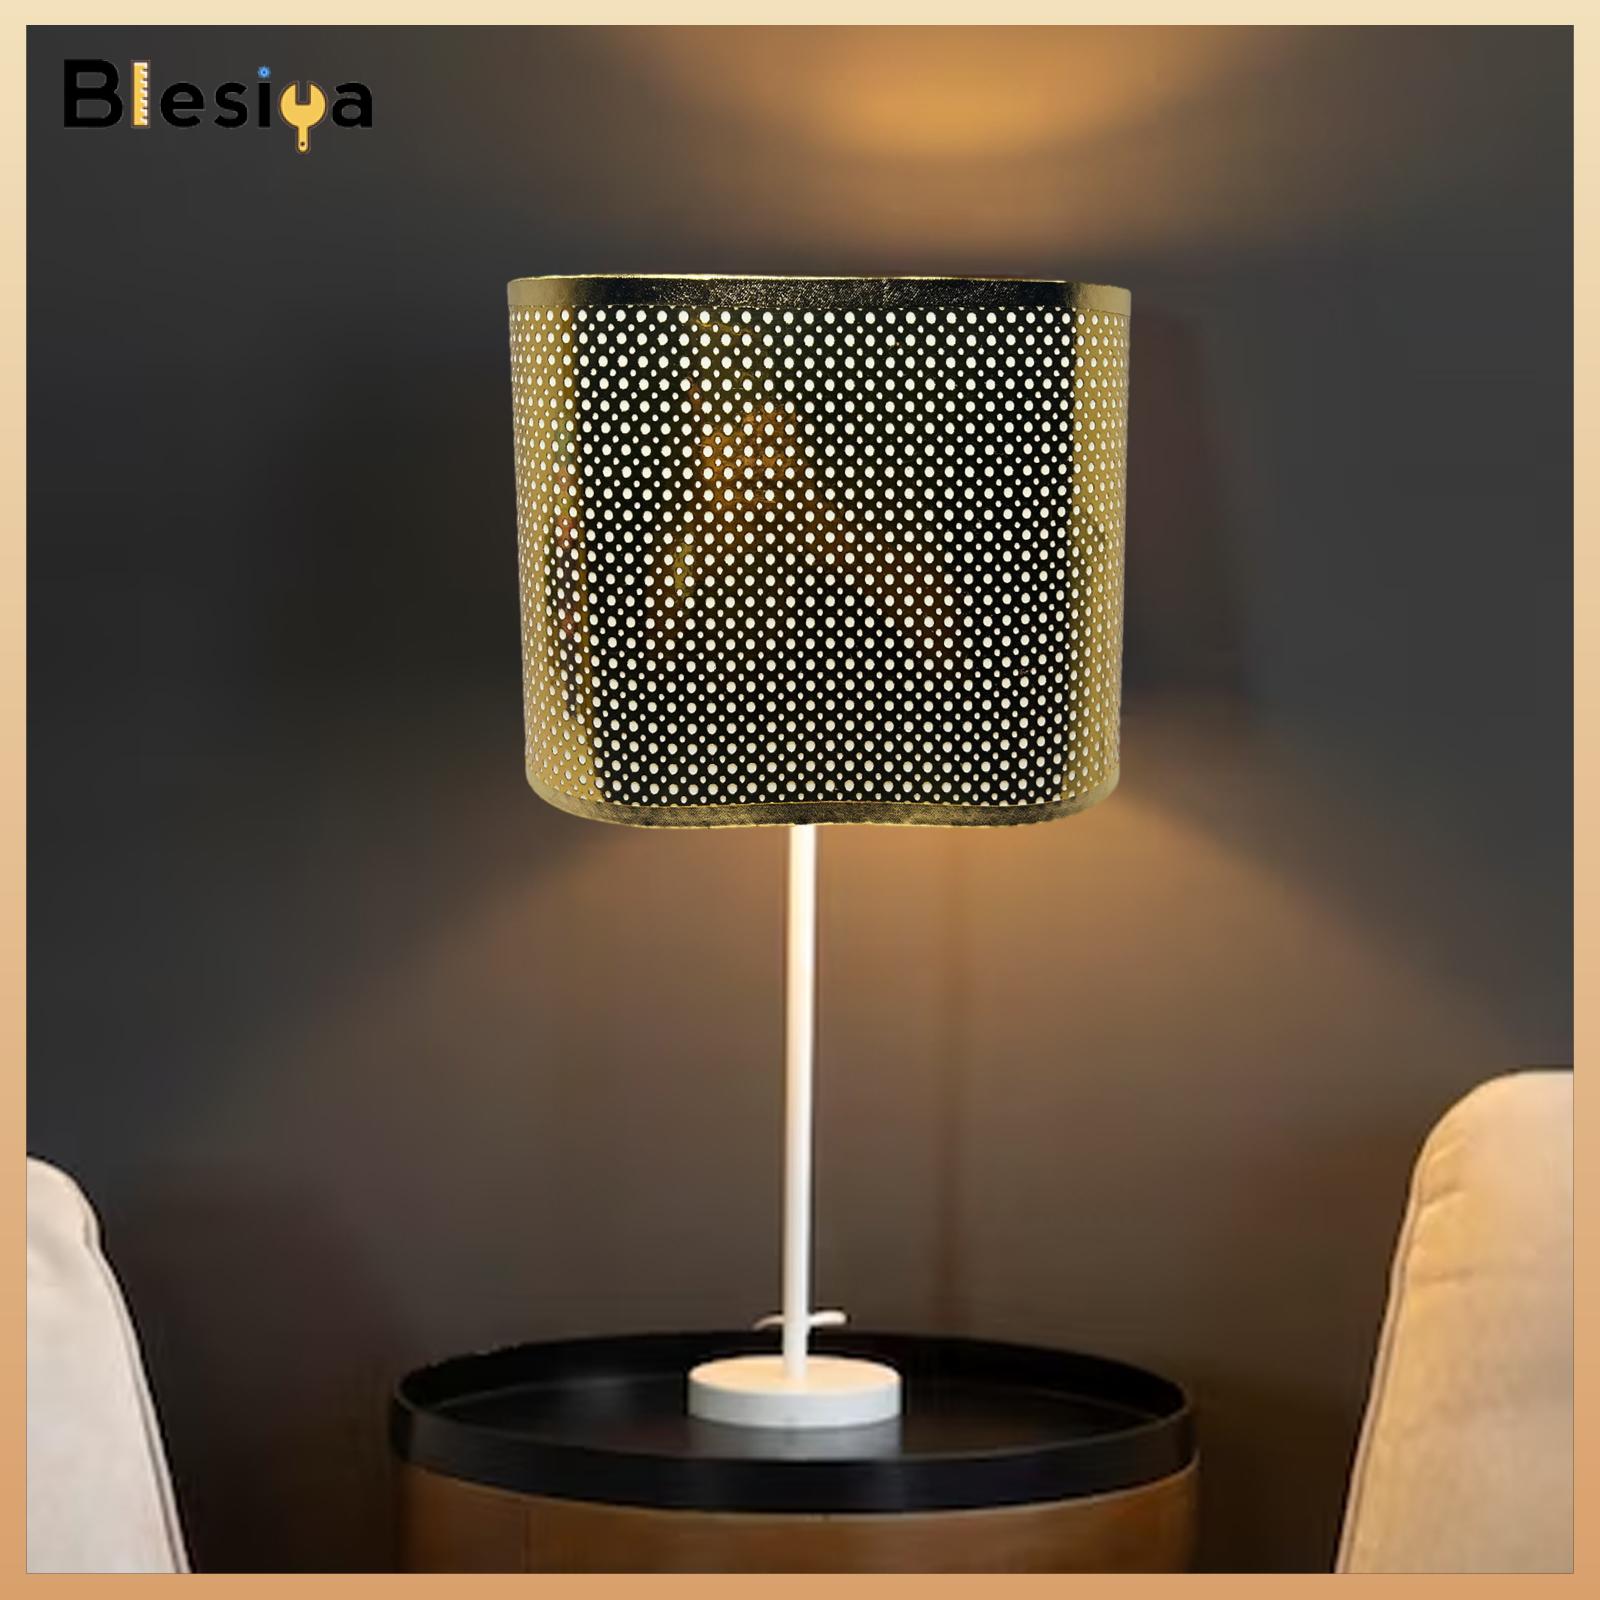 Blesiya Cloth Lampshade Bedside Lamp Shade for Wall Lamp Living Room Home